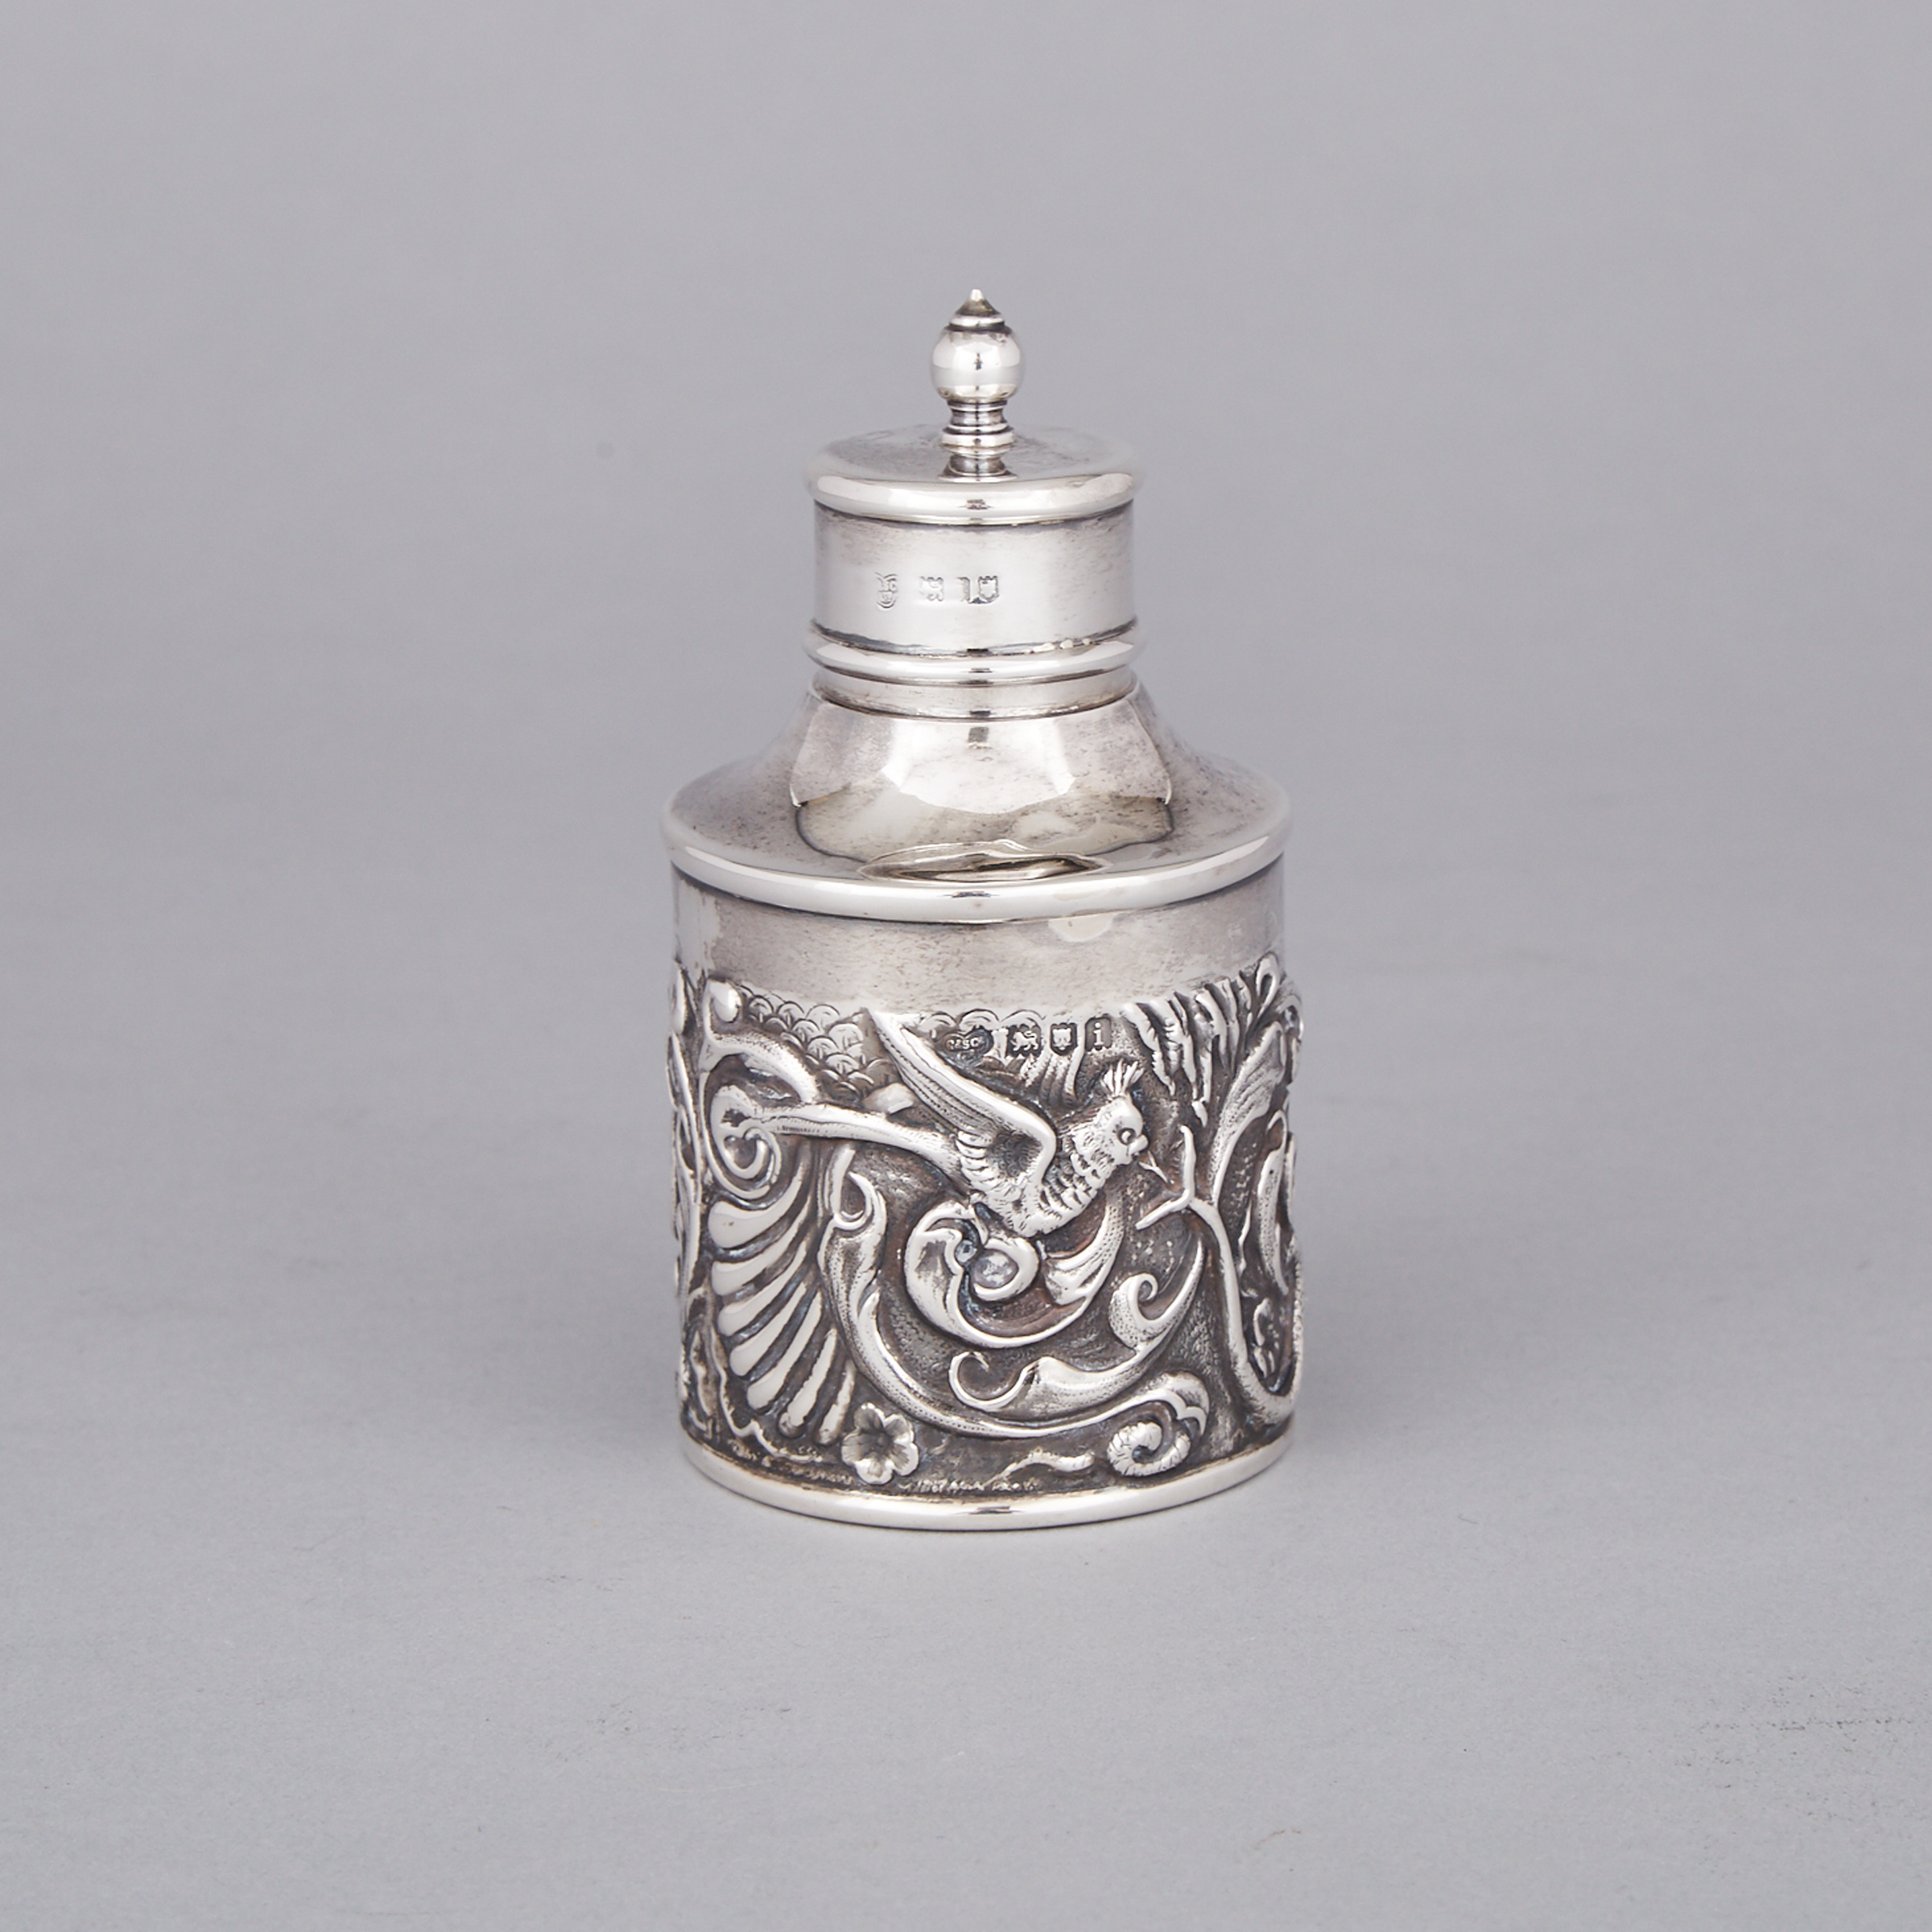 English Silver Repoussé Tea Caddy, Goldsmiths & Silversmiths Co. Ltd., London, 1904